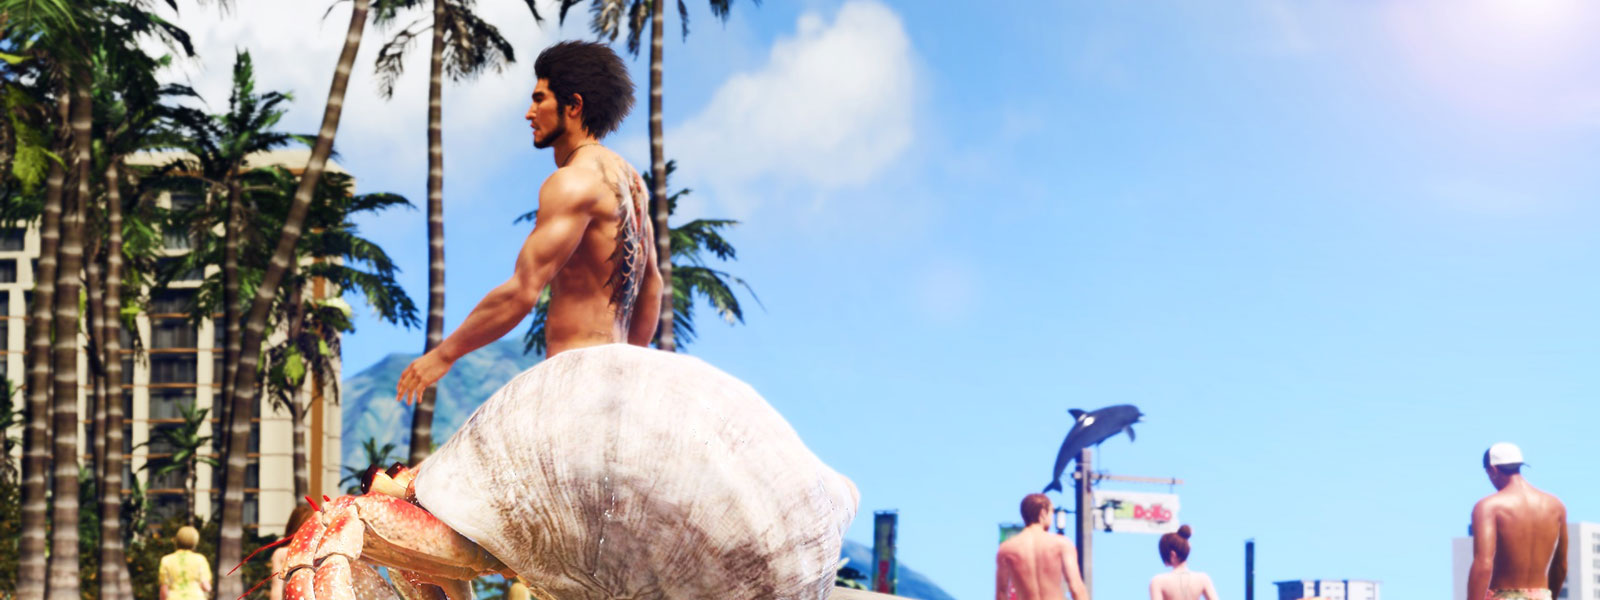 Un hombre con un tatuaje Yakuza camina por una playa con un cangrejo ermitaño que bloquea su mitad inferior.